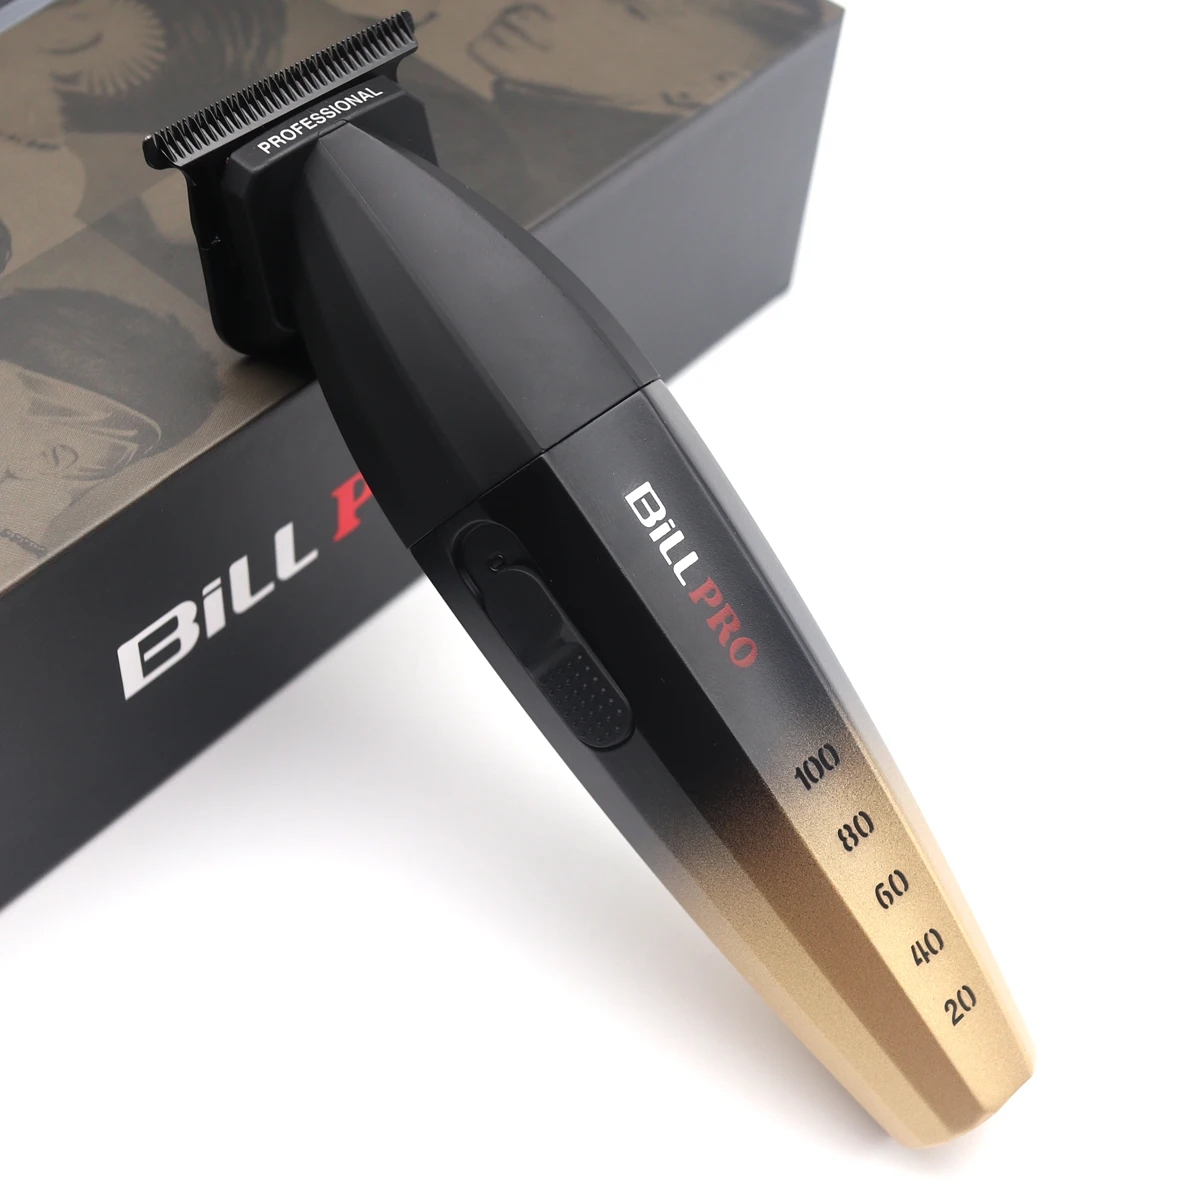 

Профессиональное лезвие с покрытием DLC BILL 800, 2 скорости, T-Blade, 8000 об/мин, высокоскоростной прецизионный триммер для резьбы по волосам, машинка для стрижки волос